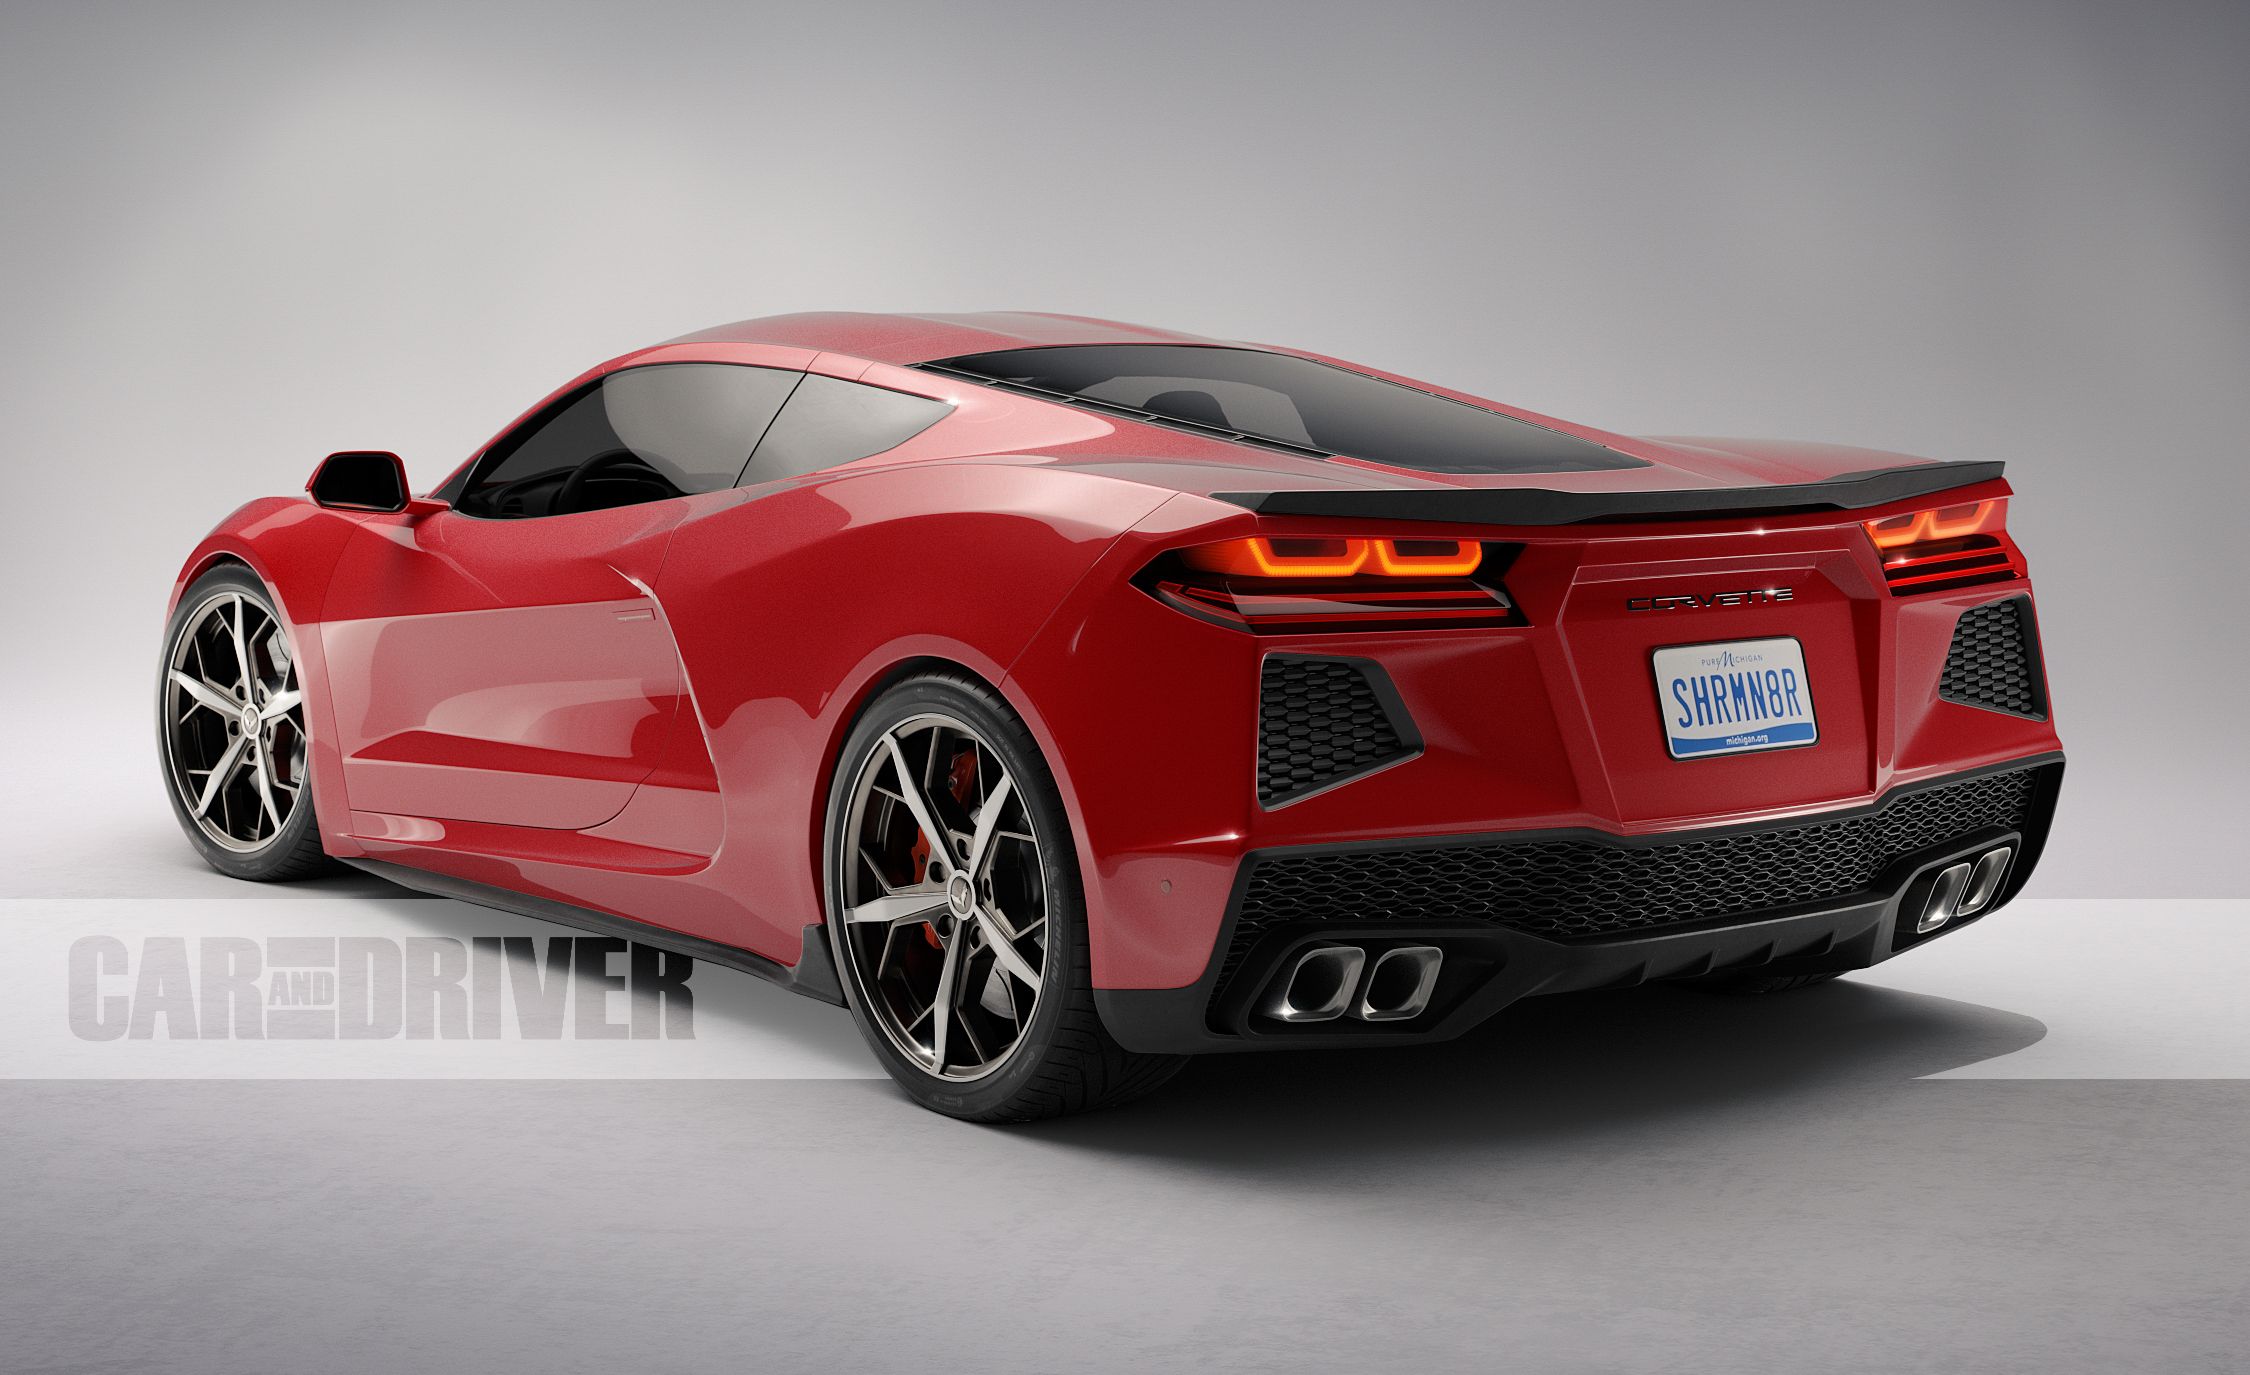 2020-chevrolet-corvette-c8-artists-rendering-25-cars-worth-waiting-for-303-1527106176.jpg